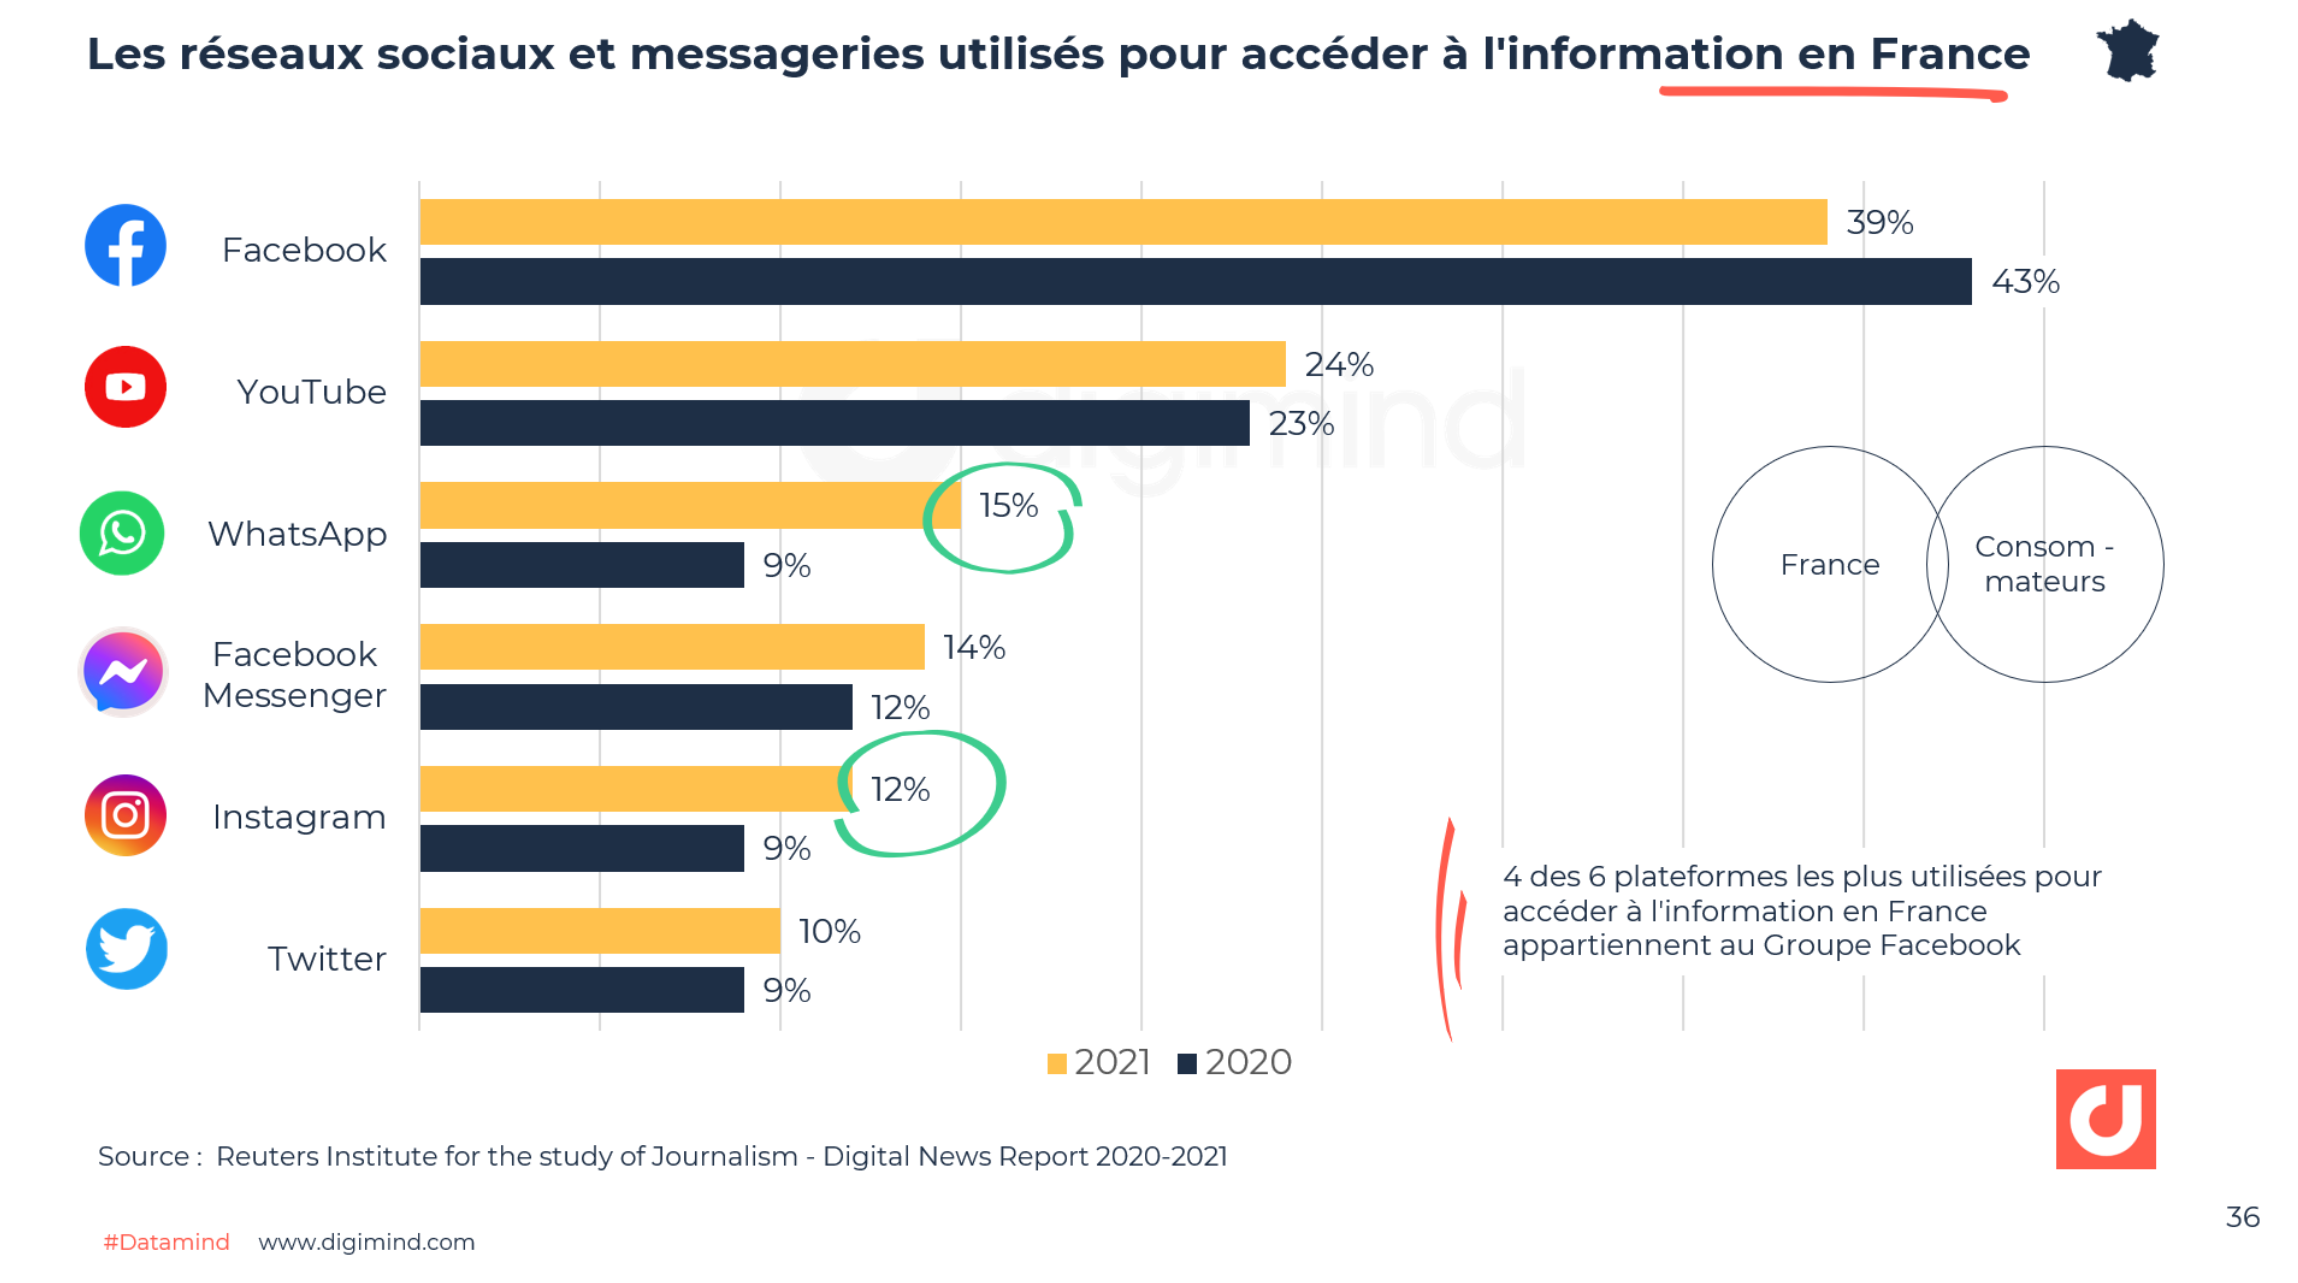 Les réseaux sociaux et messageries utilisés pour accéder à l'information en France - Digital News Report 2020-2021